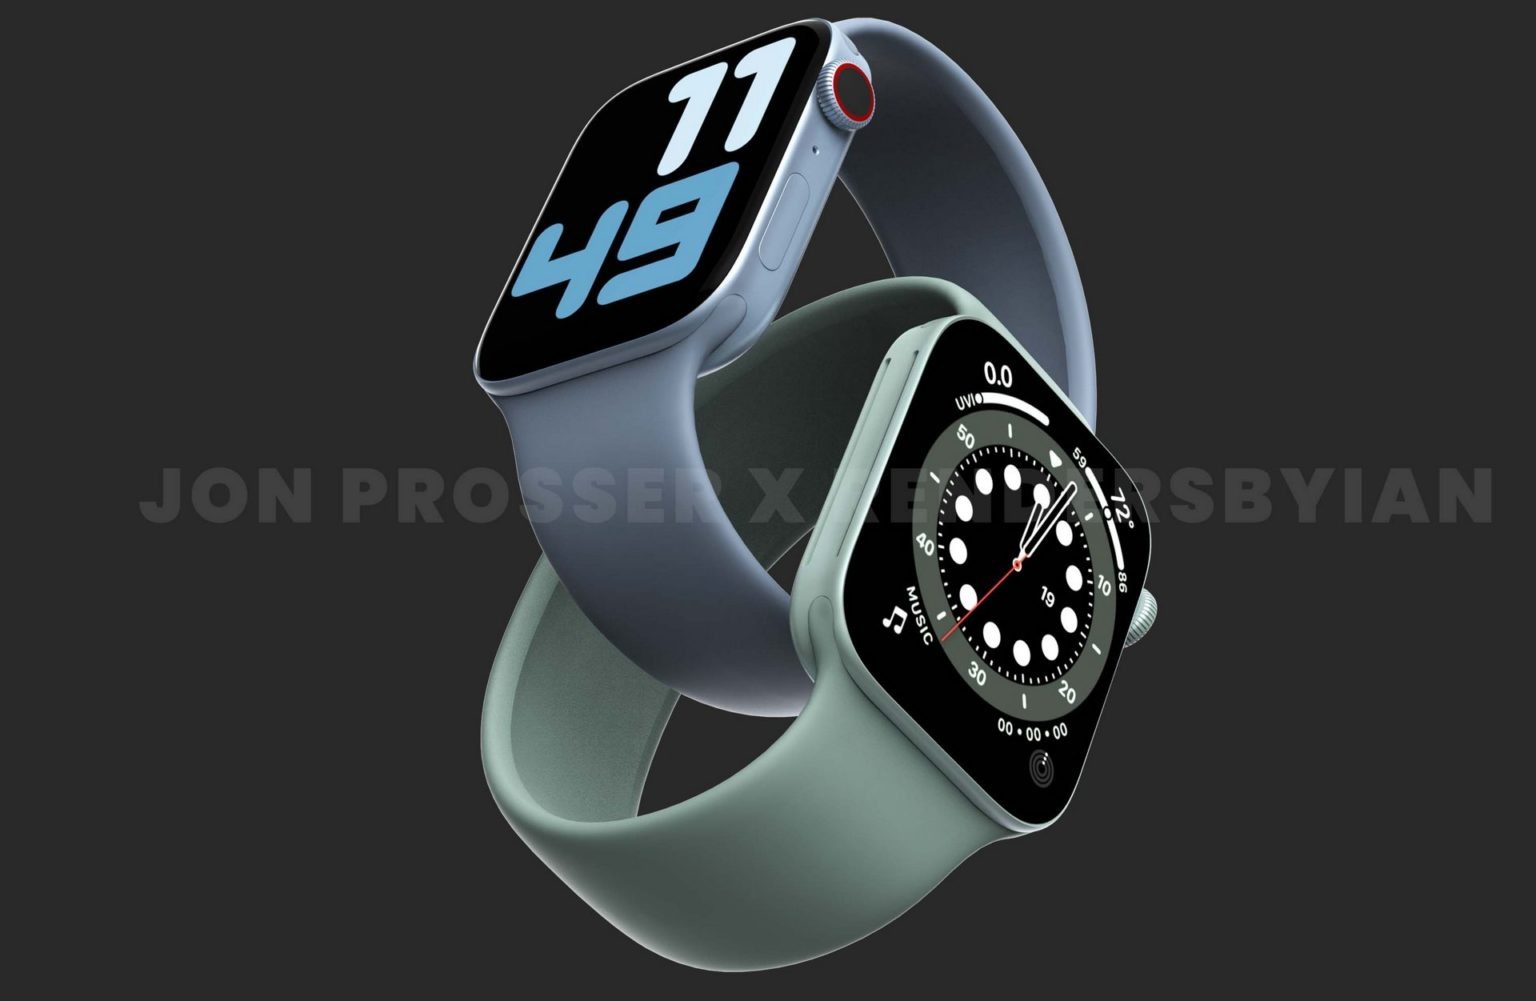 Apple Watch Series 7 jon prosser